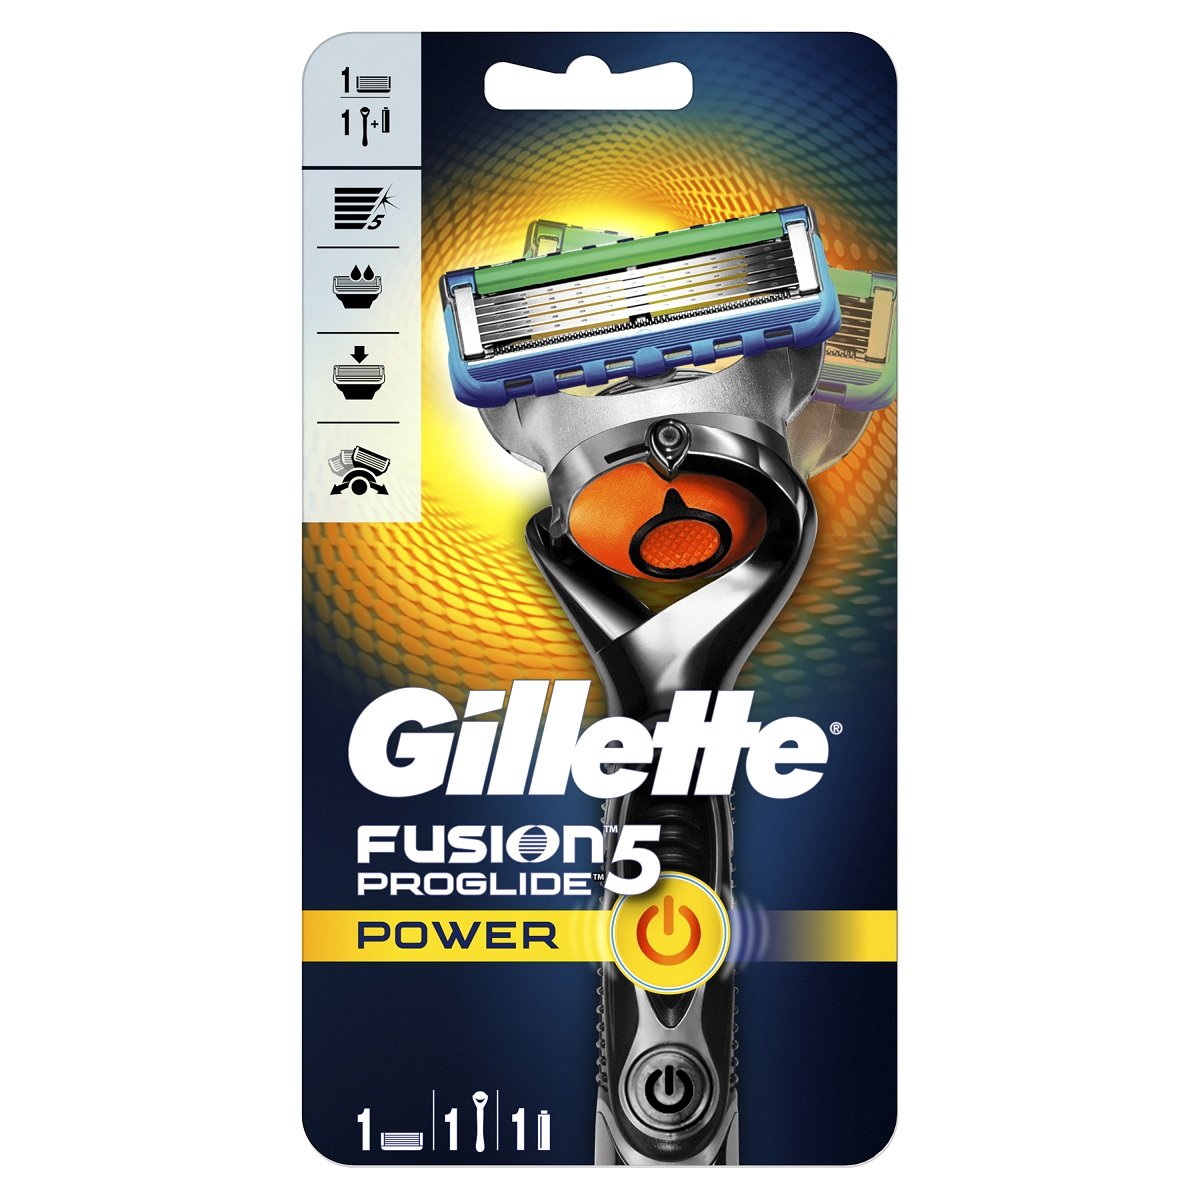 Станок для бритья мужской Gillette Fusion5 ProGlide Flexball c 1 сменным картриджем - фото 2